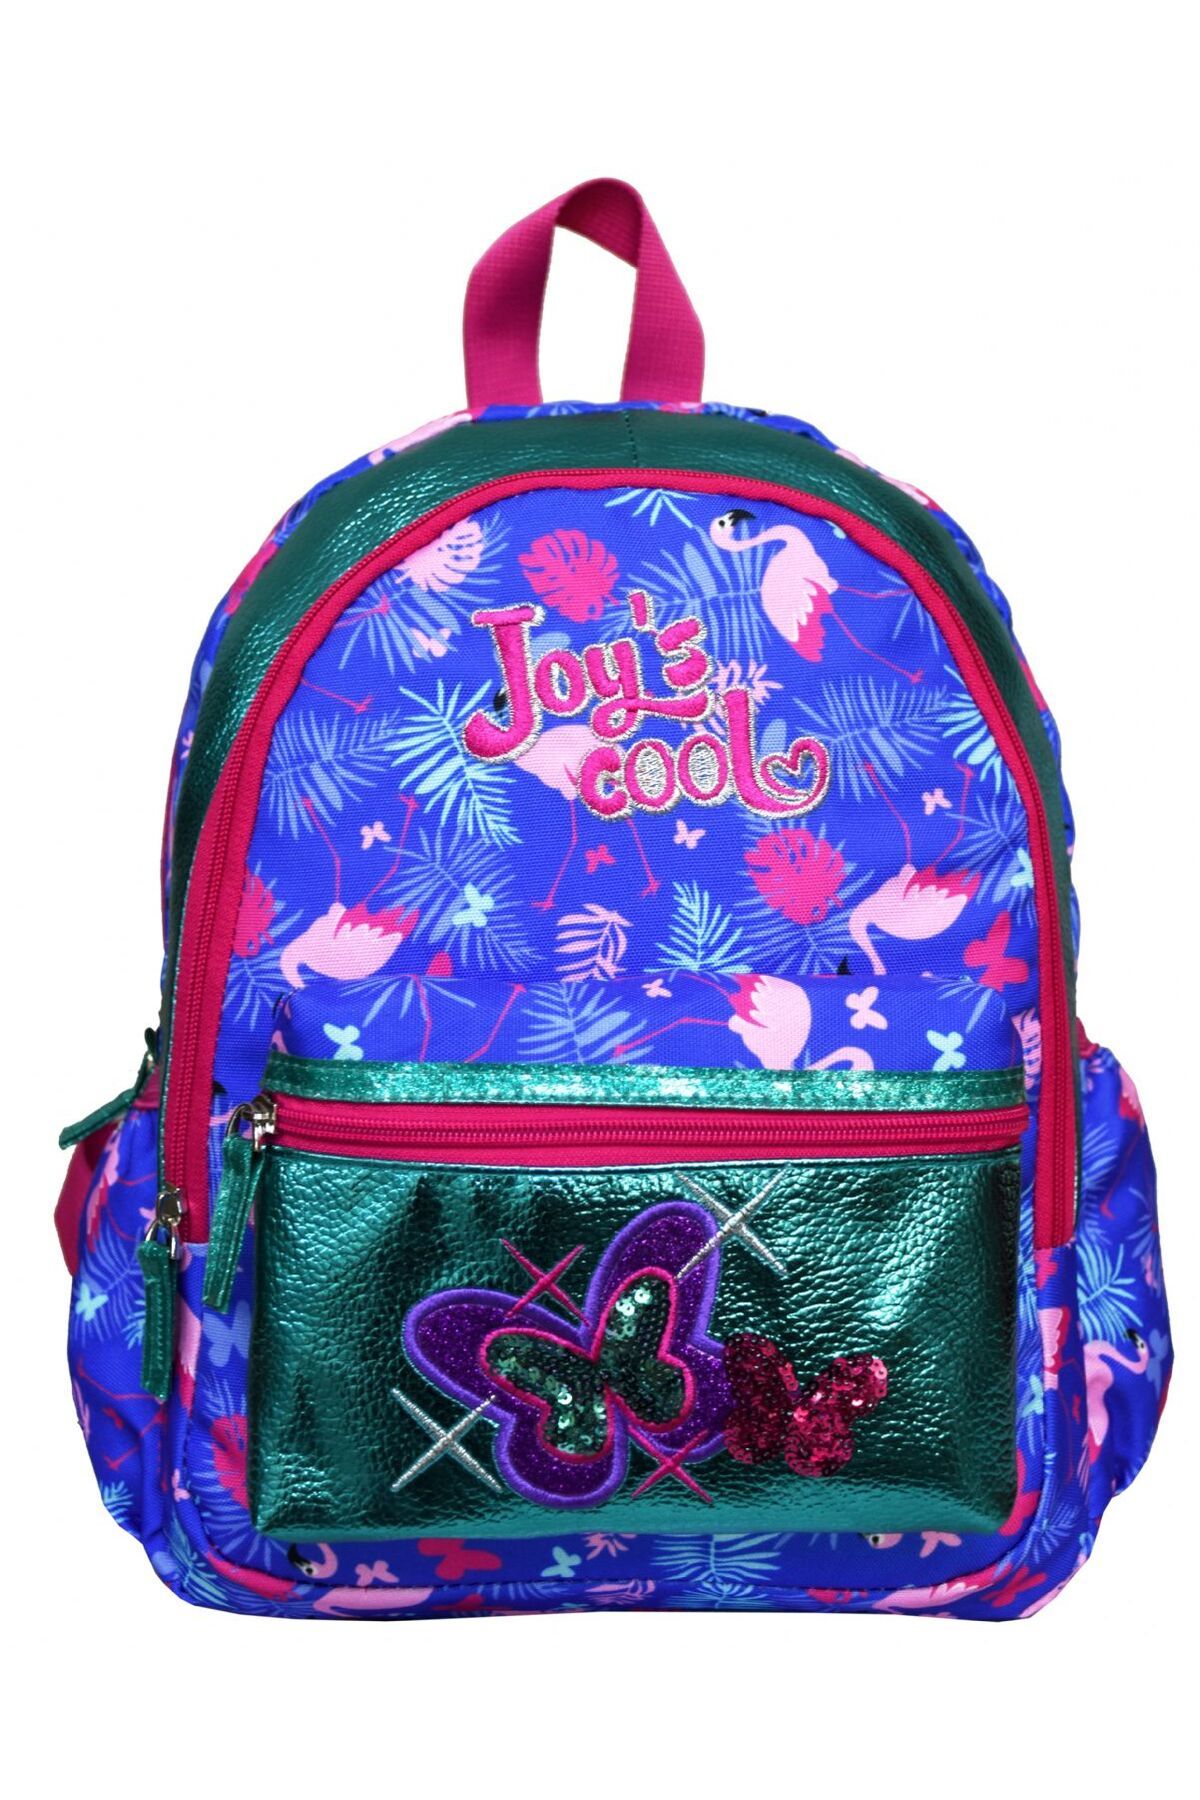 Joys Cool Joy's Cool Pullu Ve Simli Kız Çocuk Anaokulu Çantası -kelebek Işlemeli Yeşil Mavi